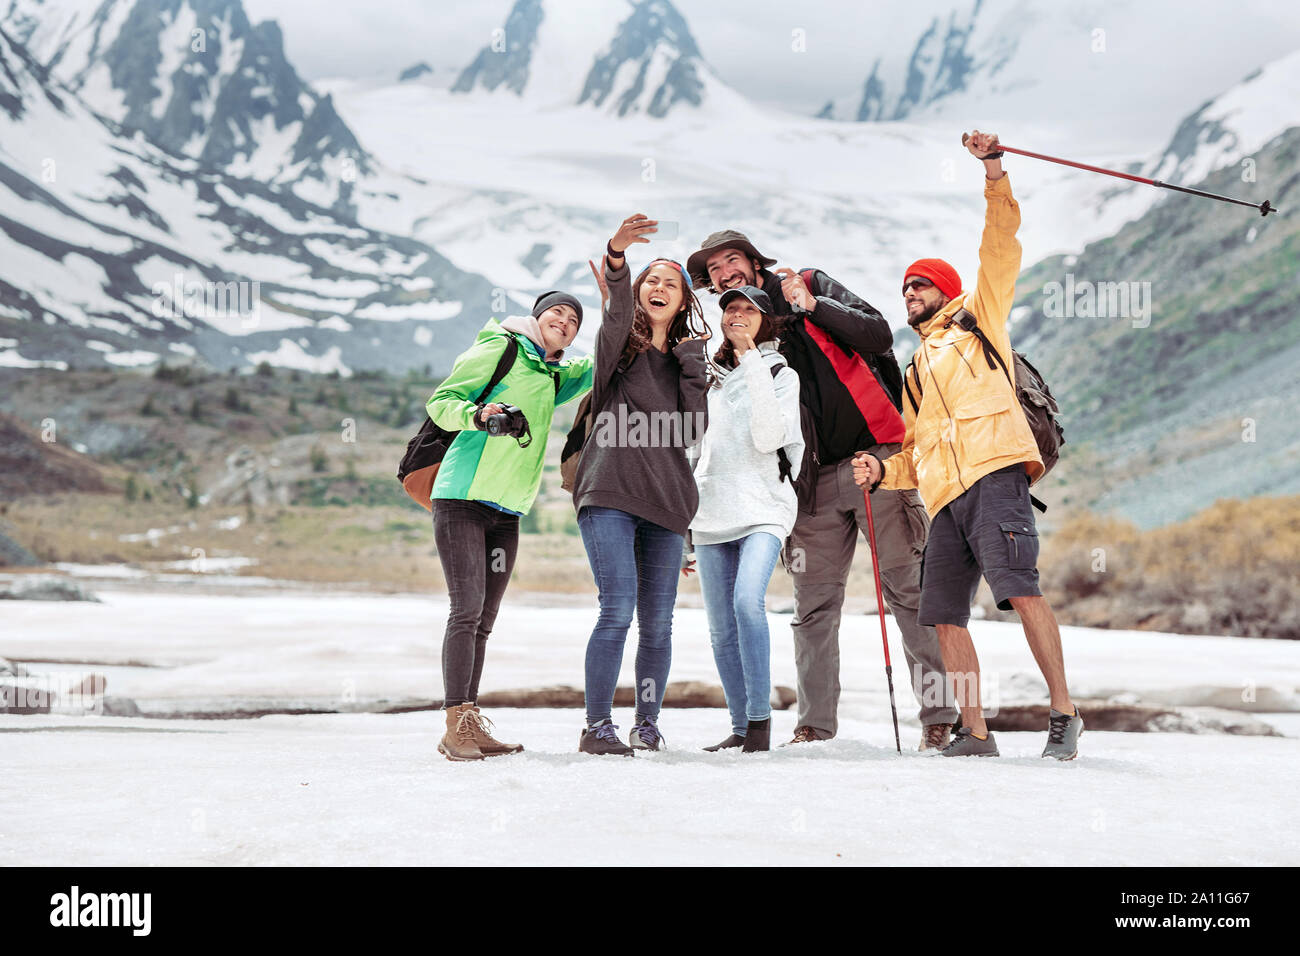 Gruppe von fünf glückliche Touristen nimmt selfie Foto gegen Berge Stockfoto